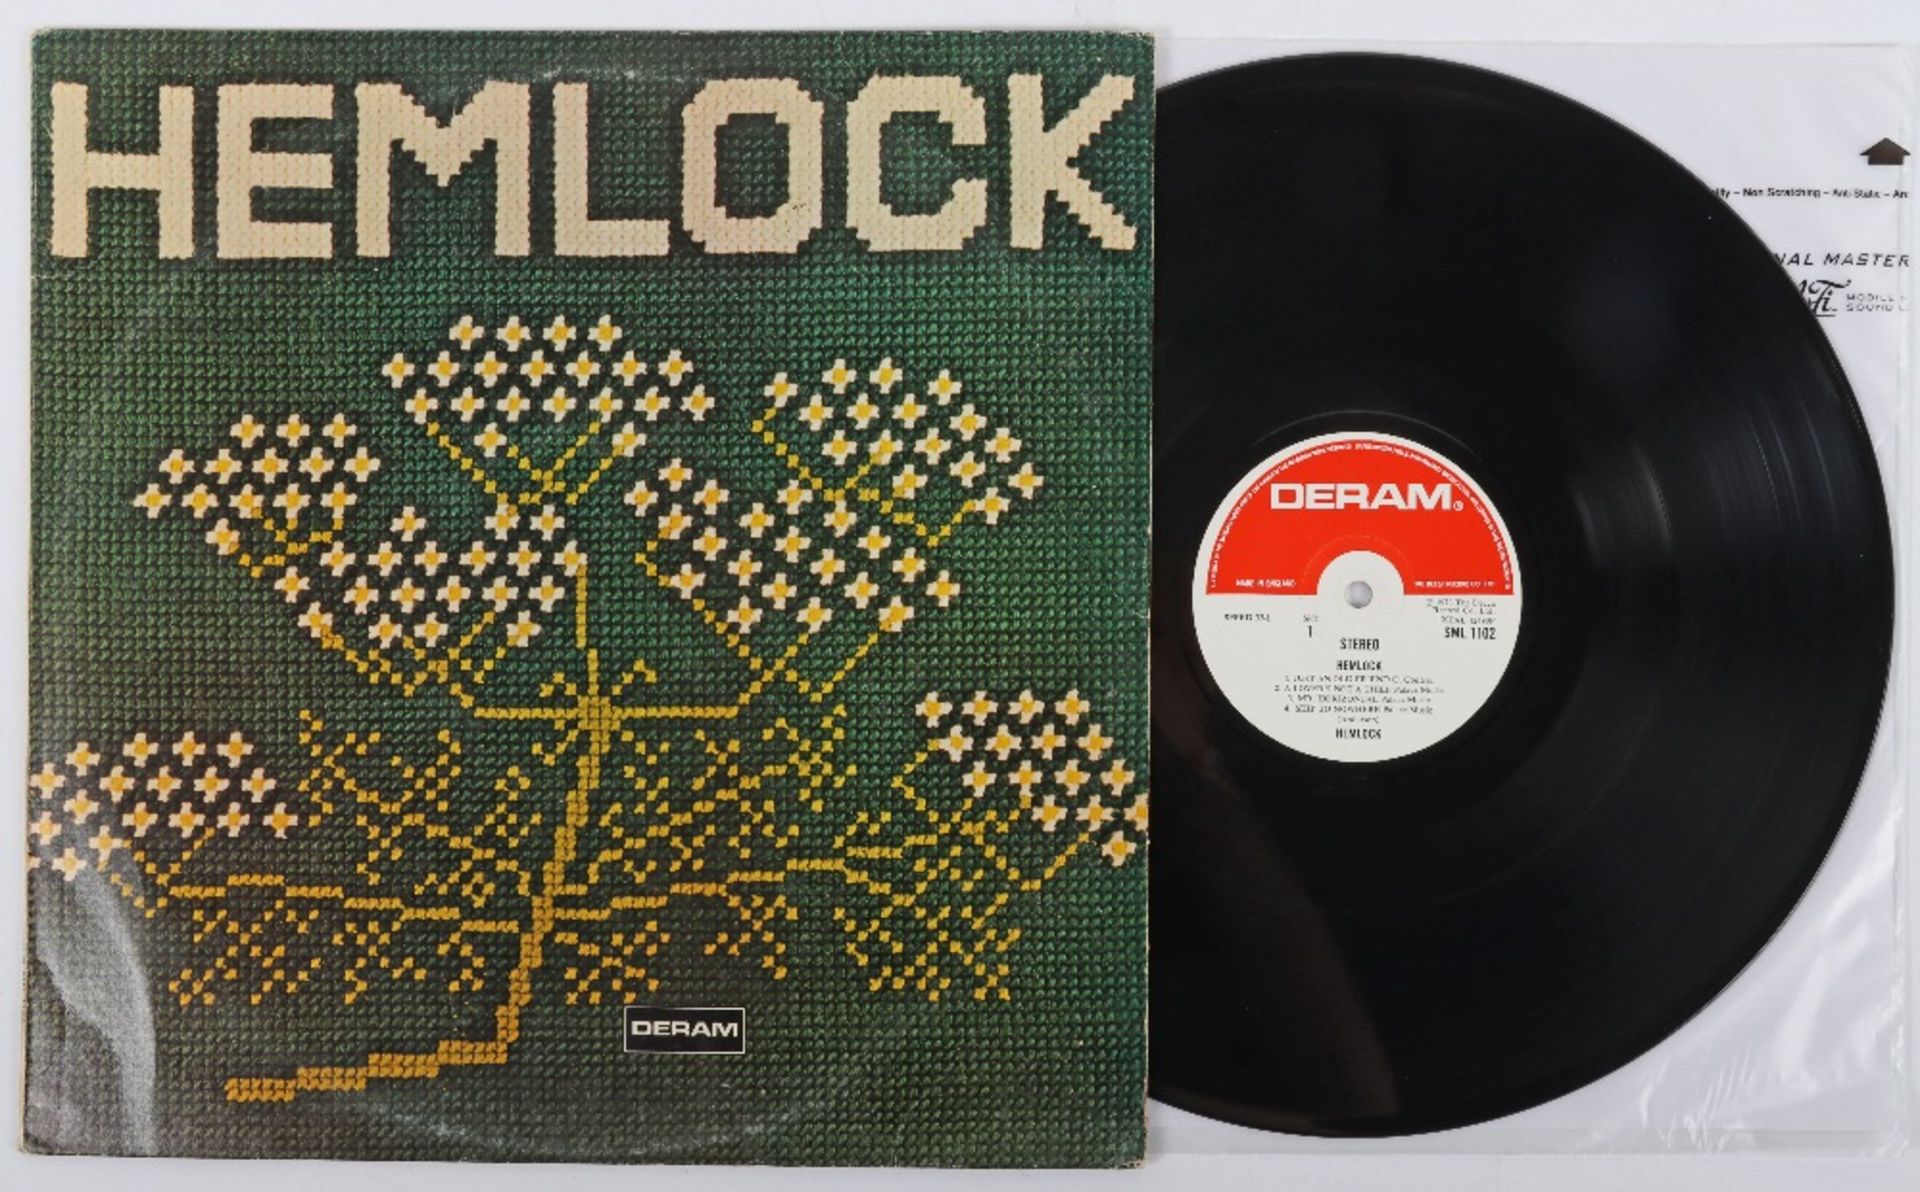 Hemlock-Hemlock Vinyl LP, Album